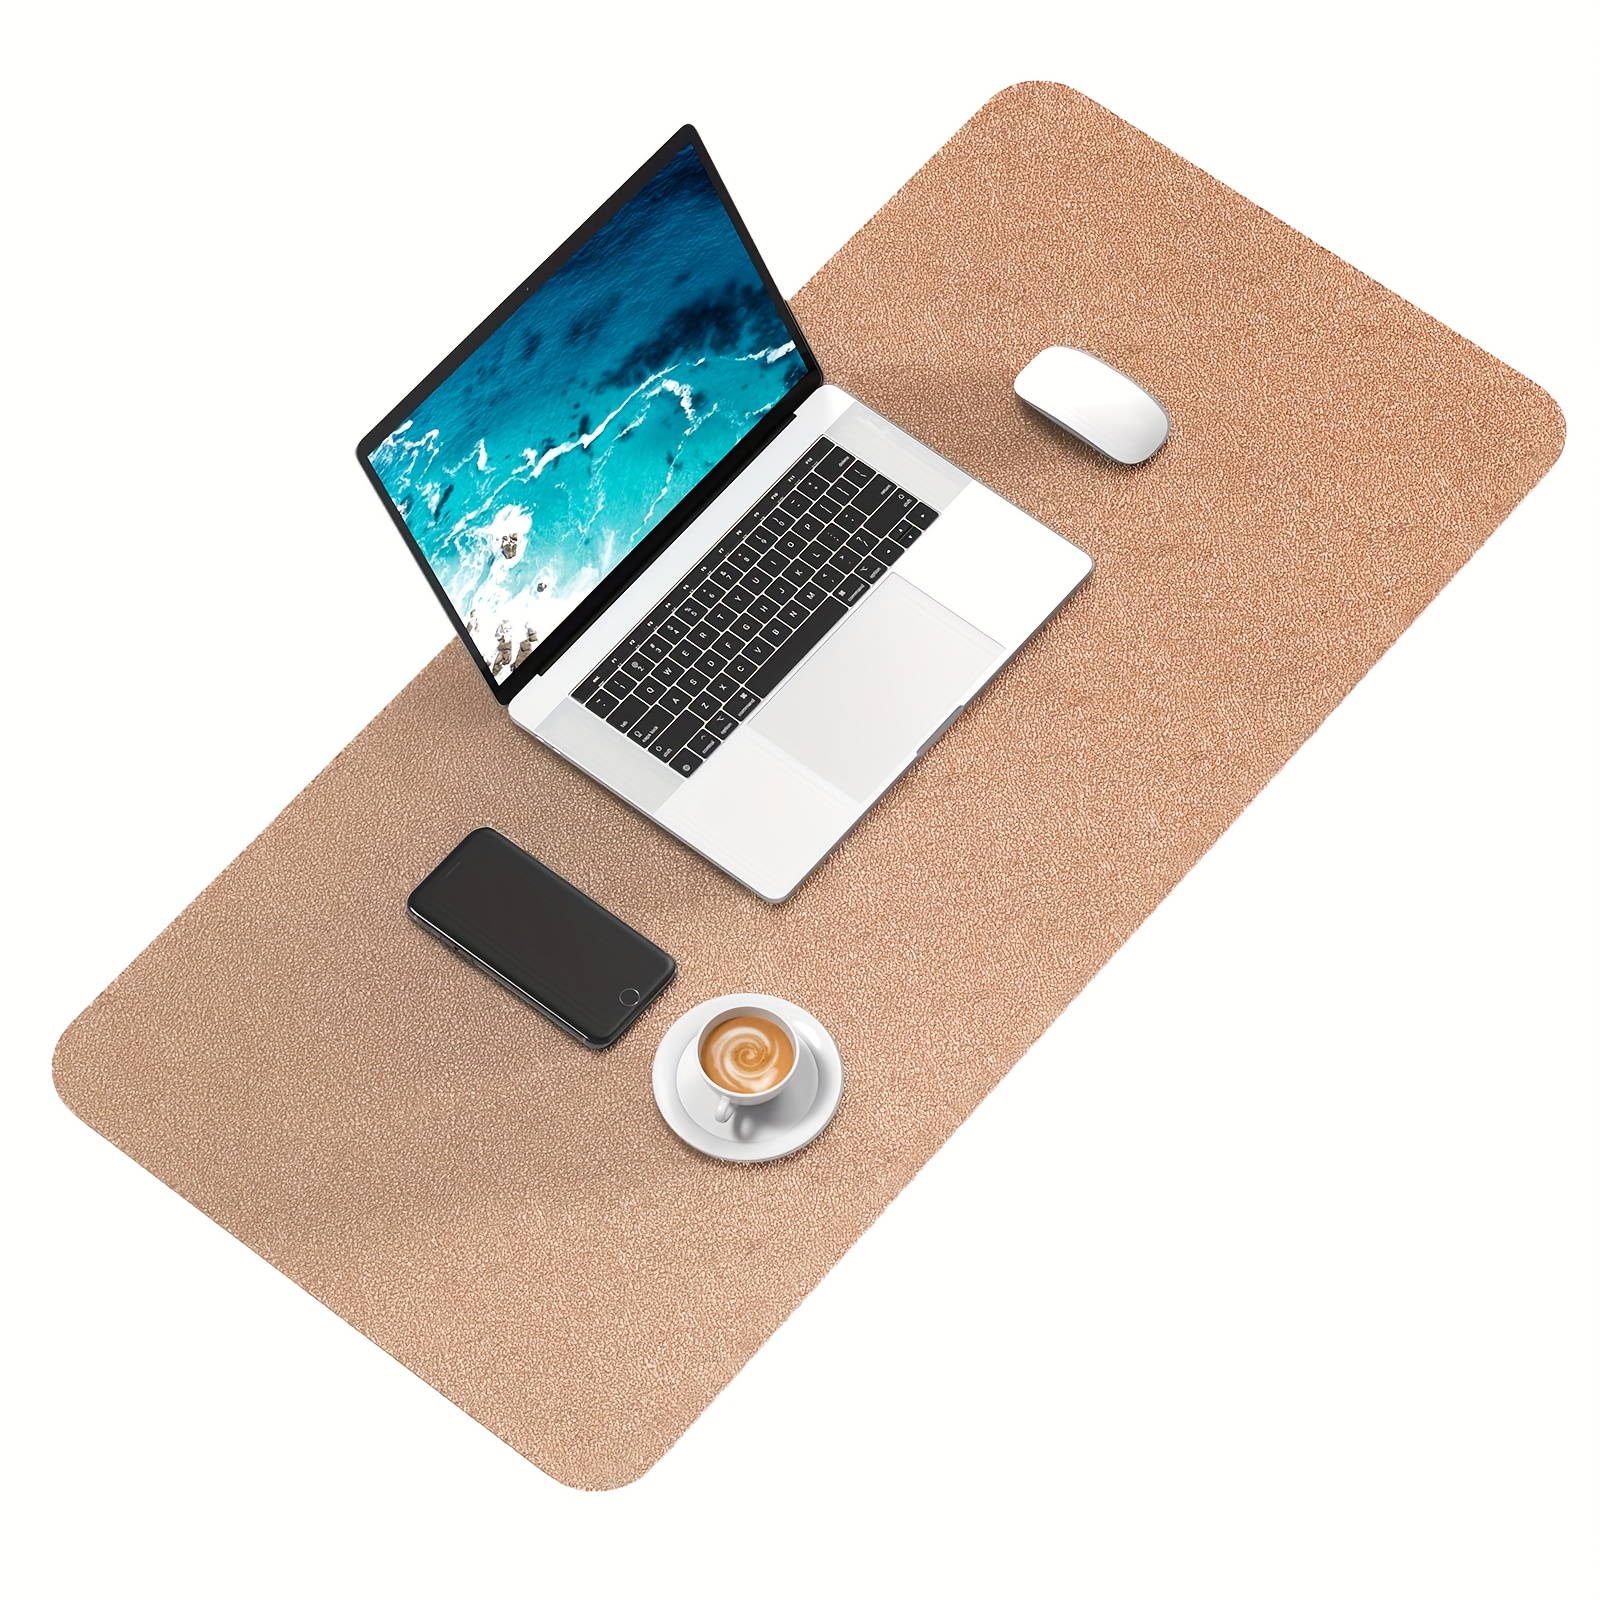 K KNODEL Desk Mat, Mouse Pad, 31.5 x 15.7, Pink